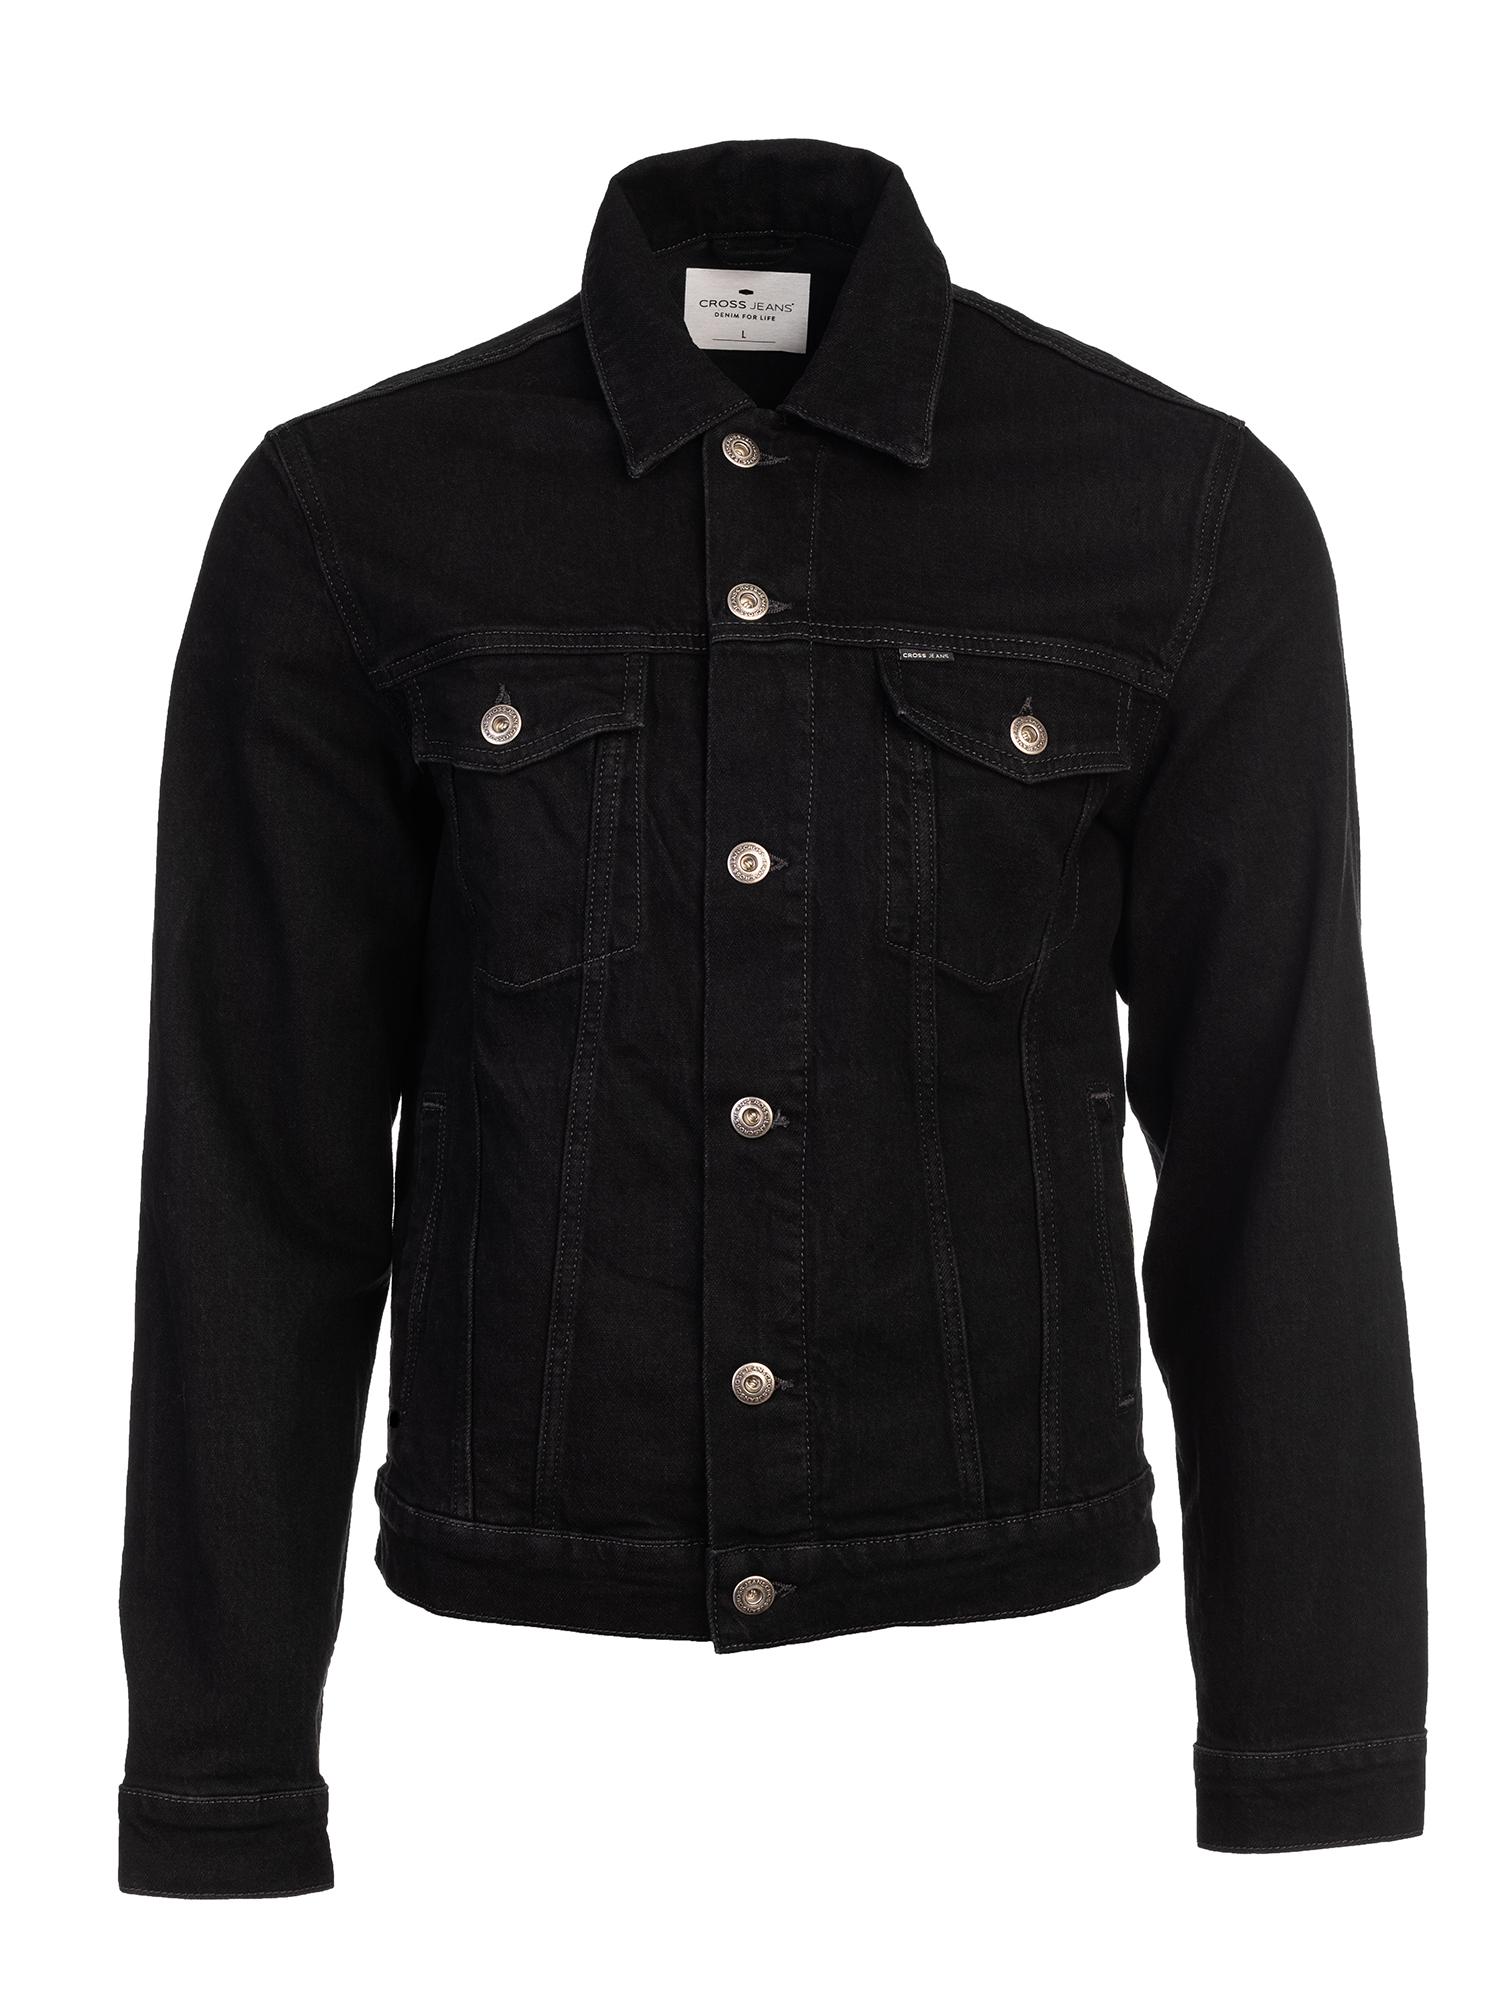 Джинсовая куртка мужская Cross Jeans A 315-056 черная XL